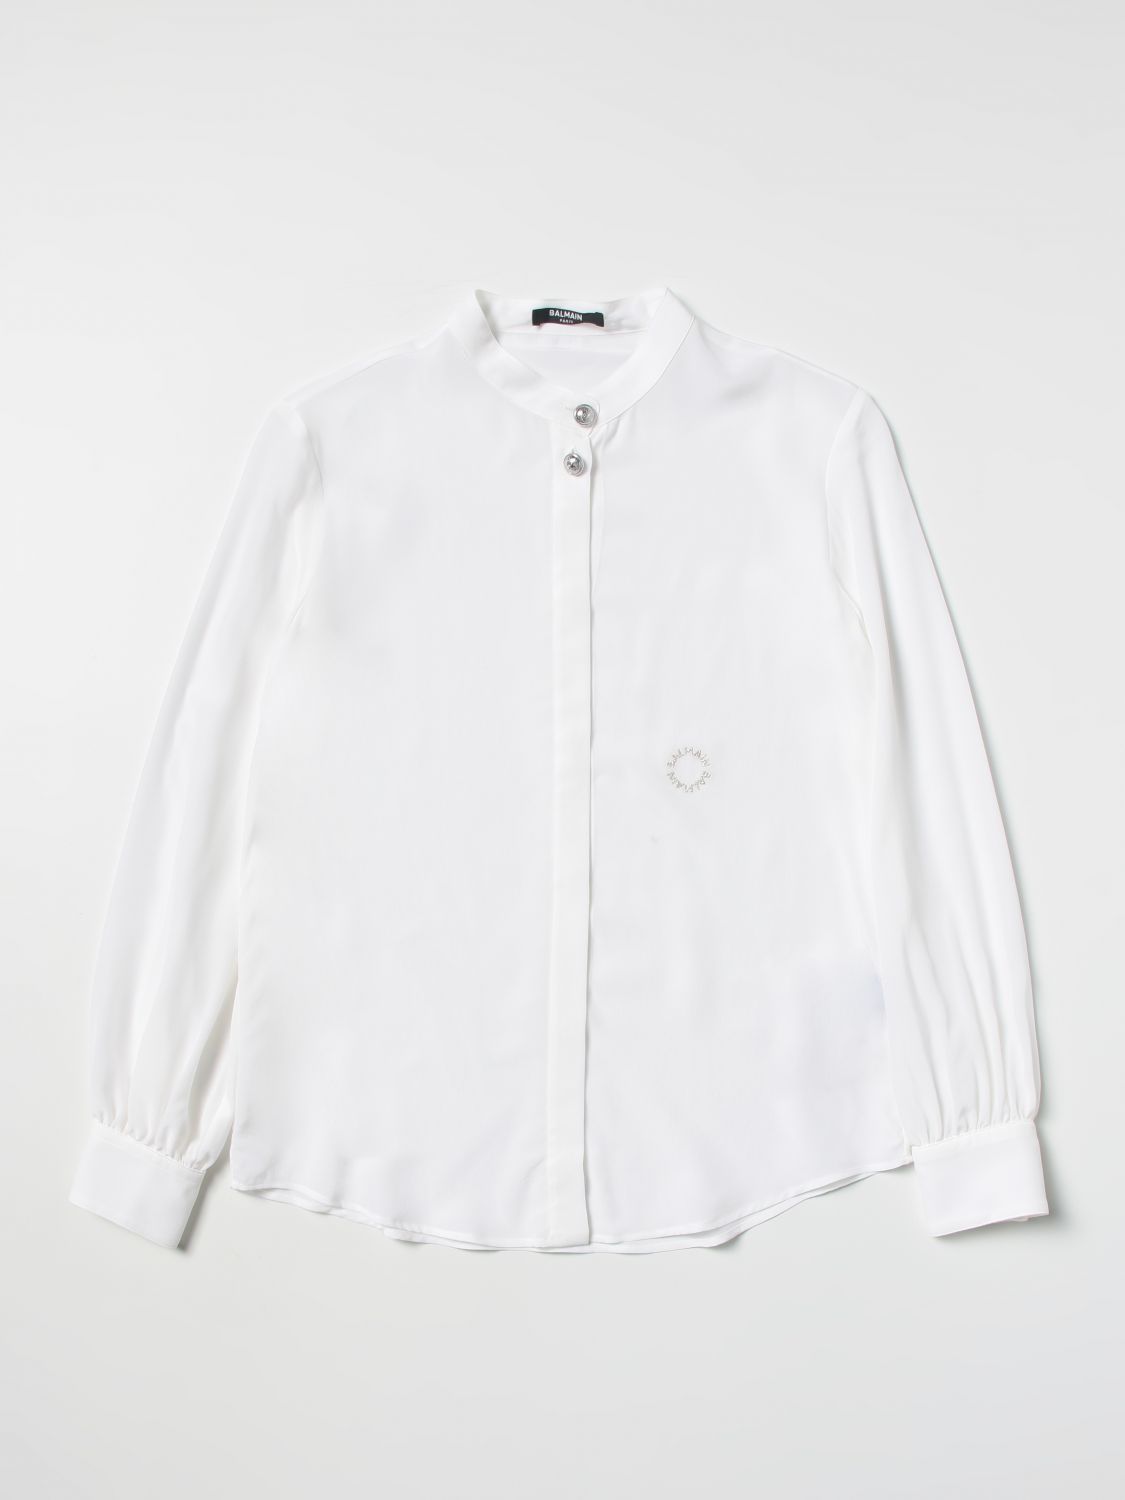 BALMAIN: shirt for girls - Ivory | Balmain shirt 6R5A40K0059 online on